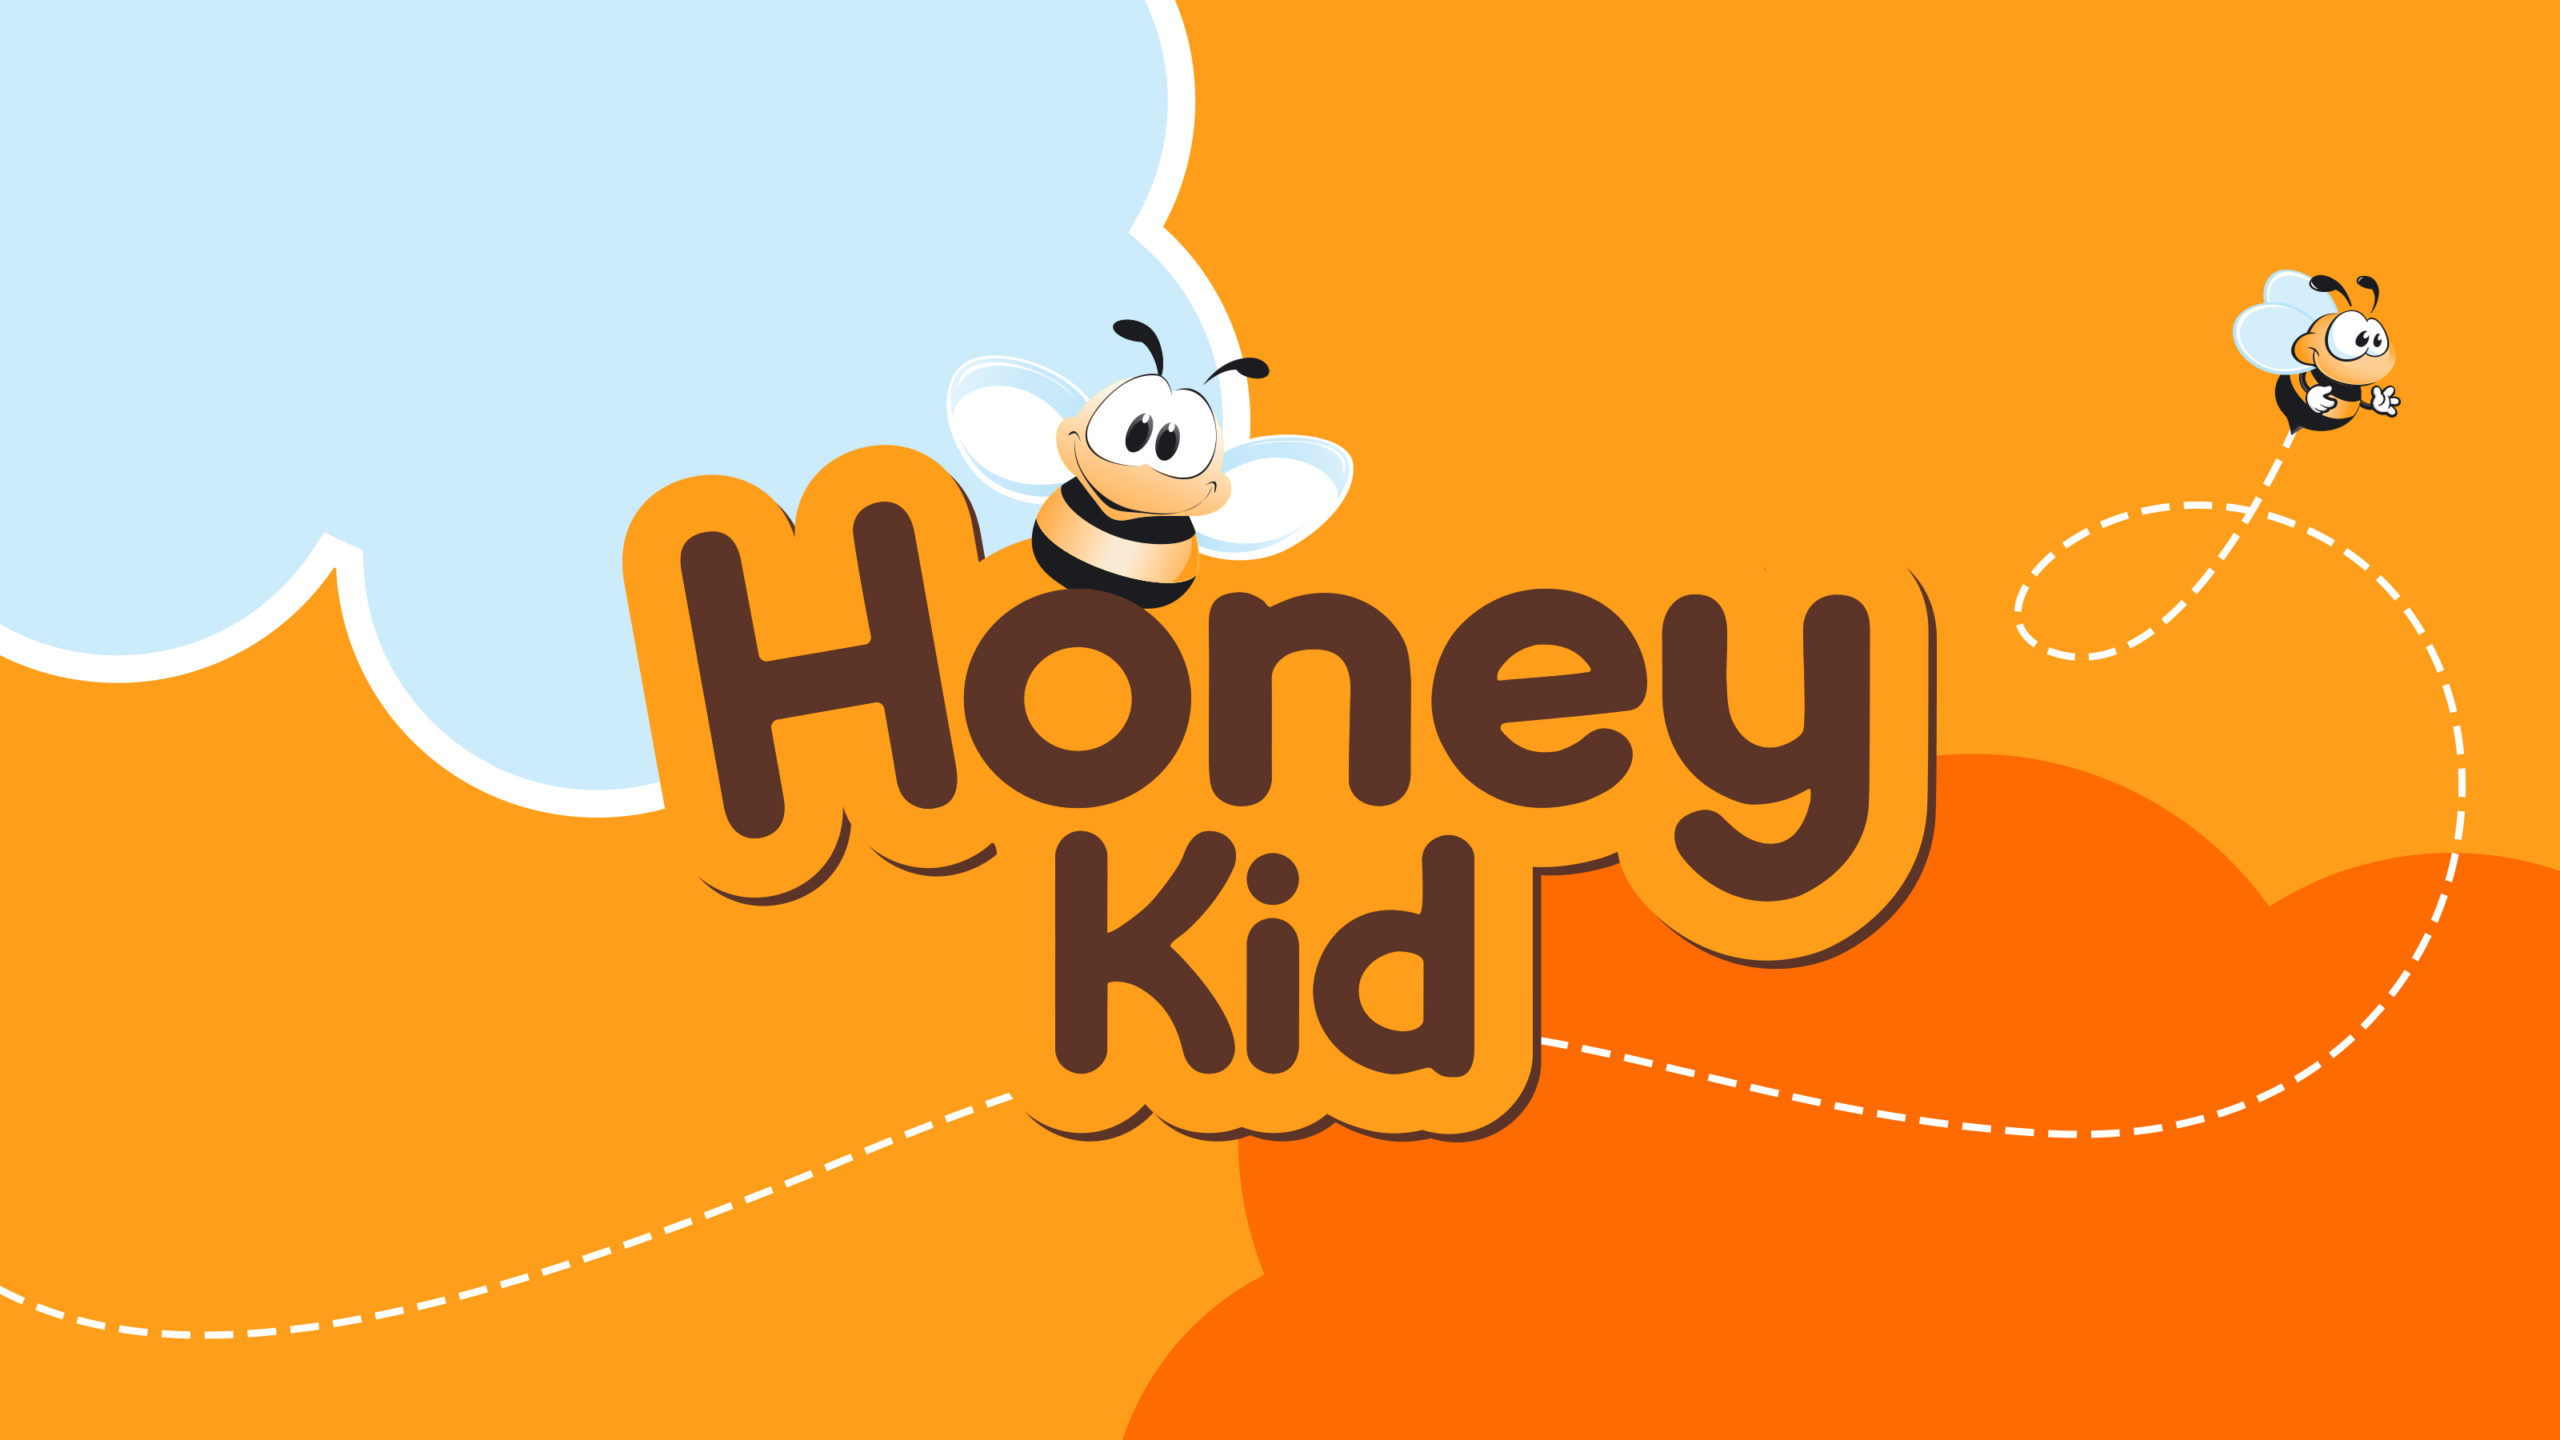 Honey Kid - Kima